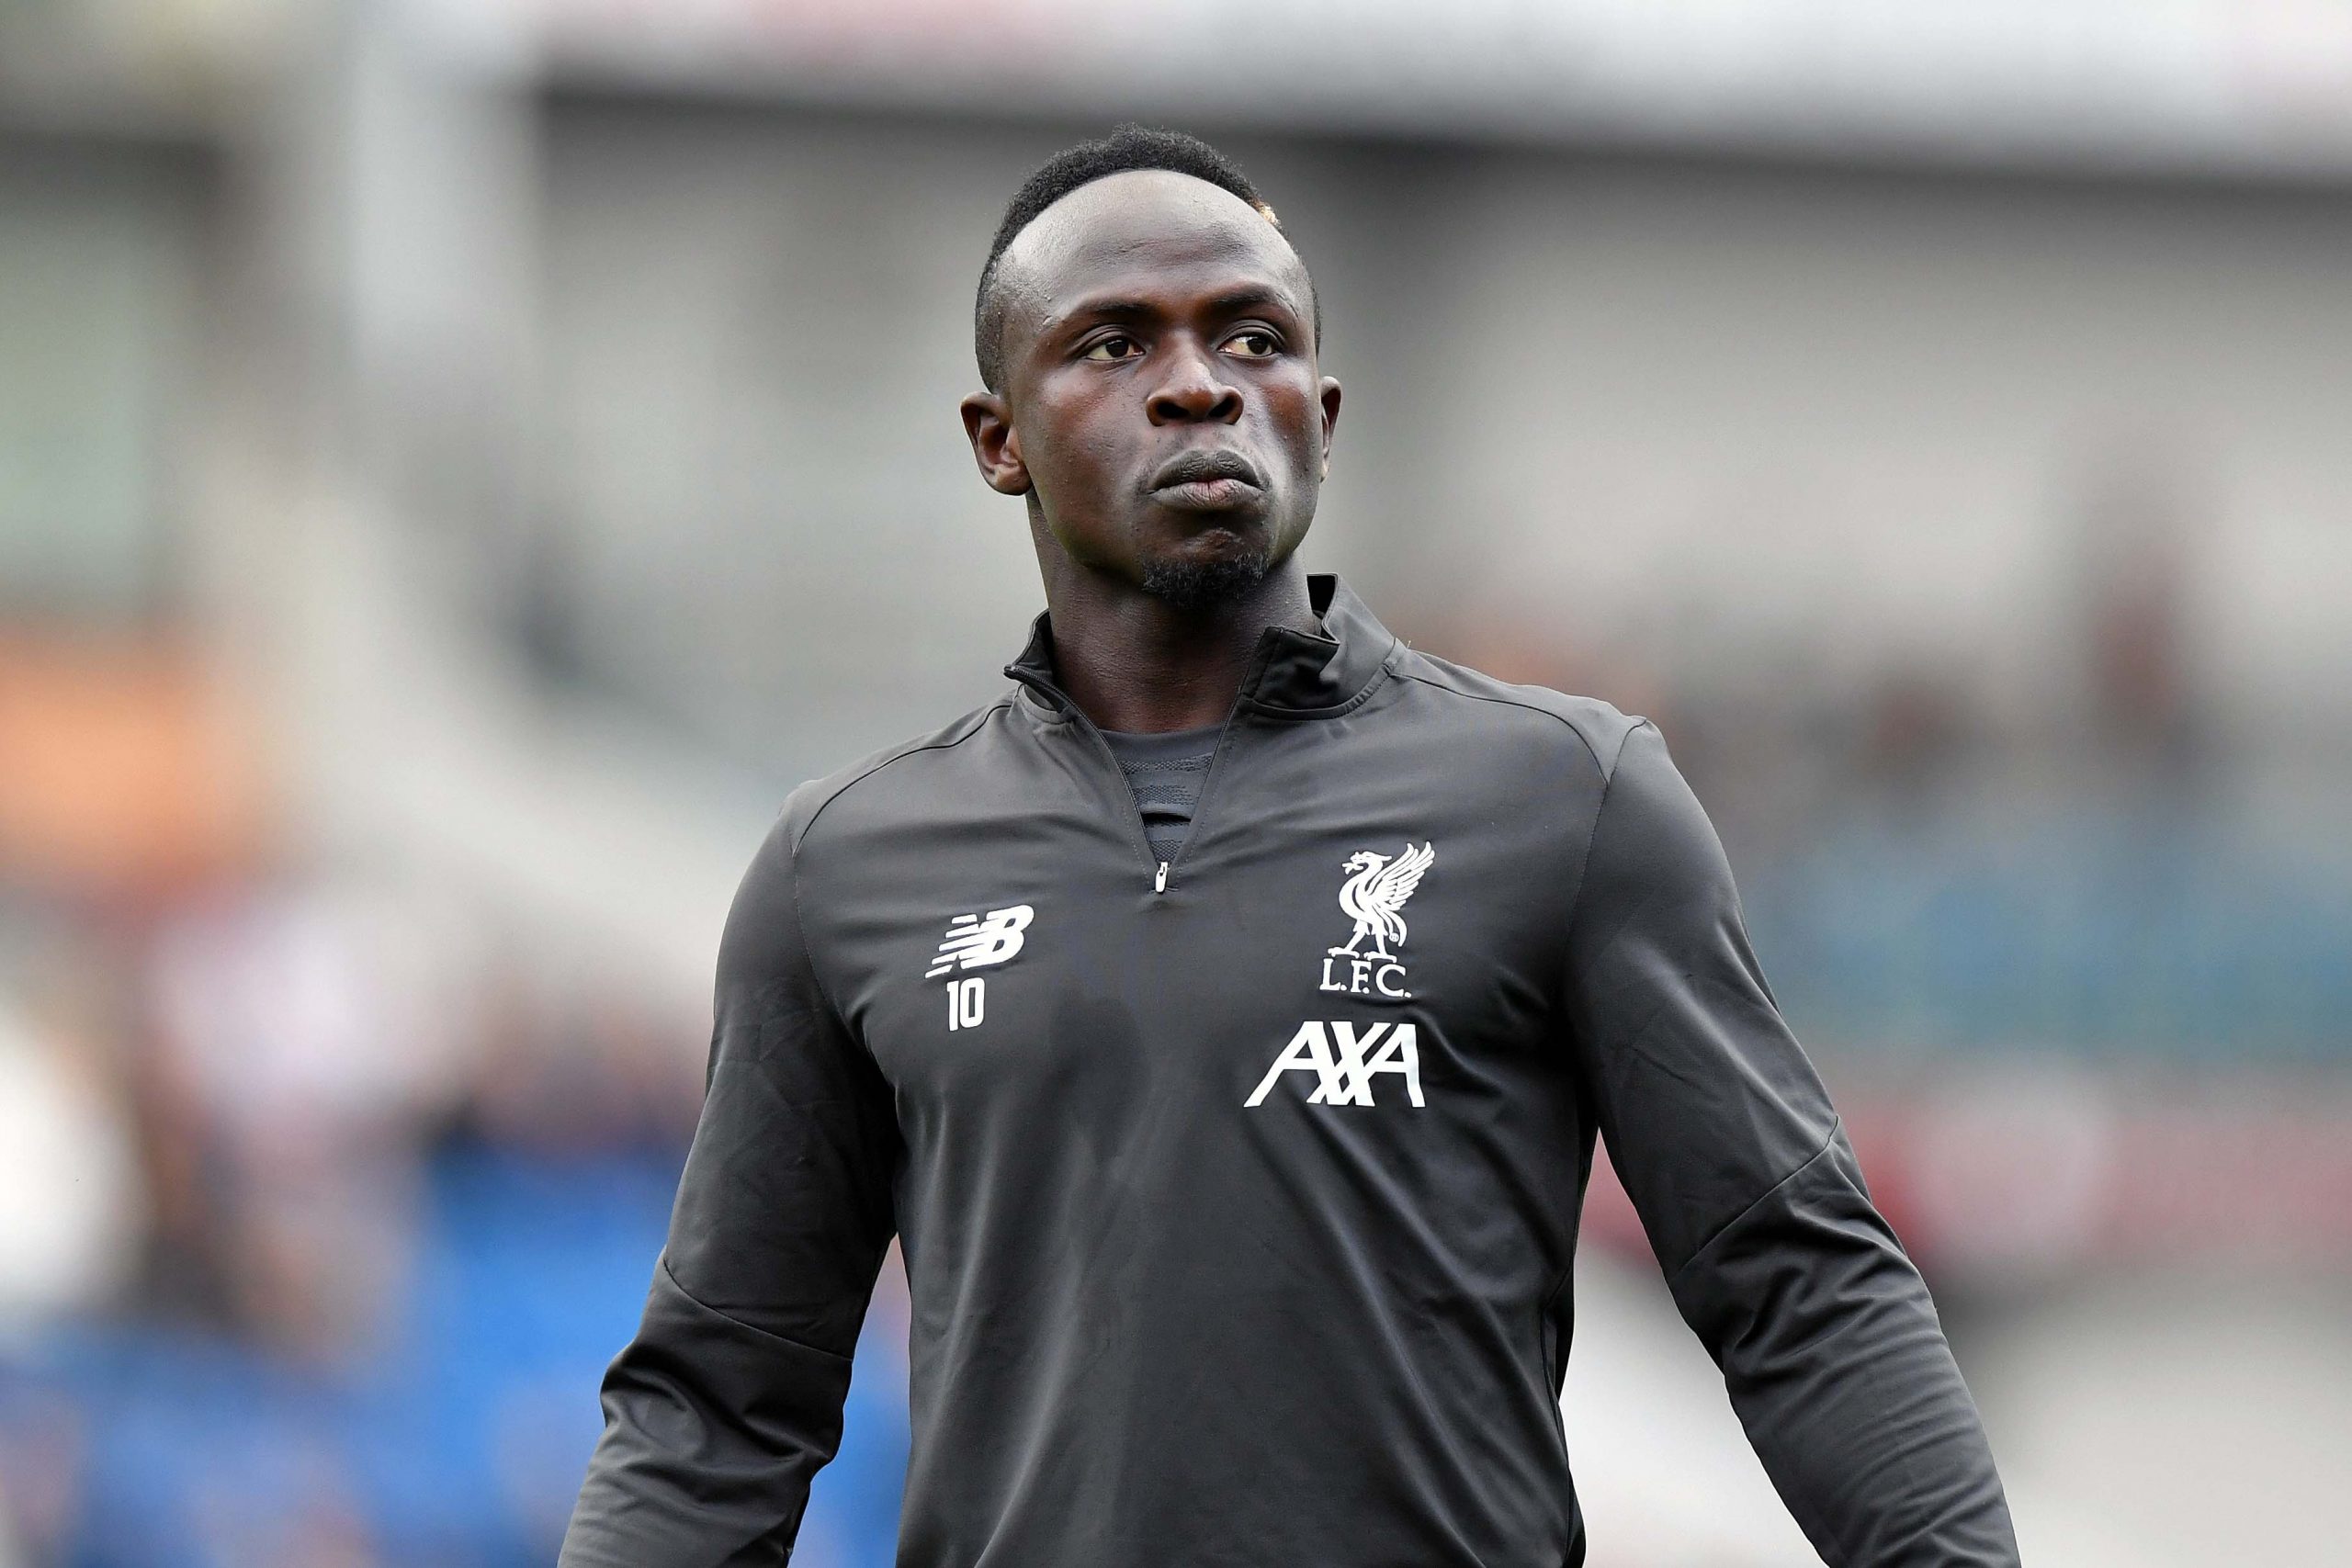 Inquiétude autour de Sadio Mané, le Sénégalais sort sur blessure à Wolverhampton